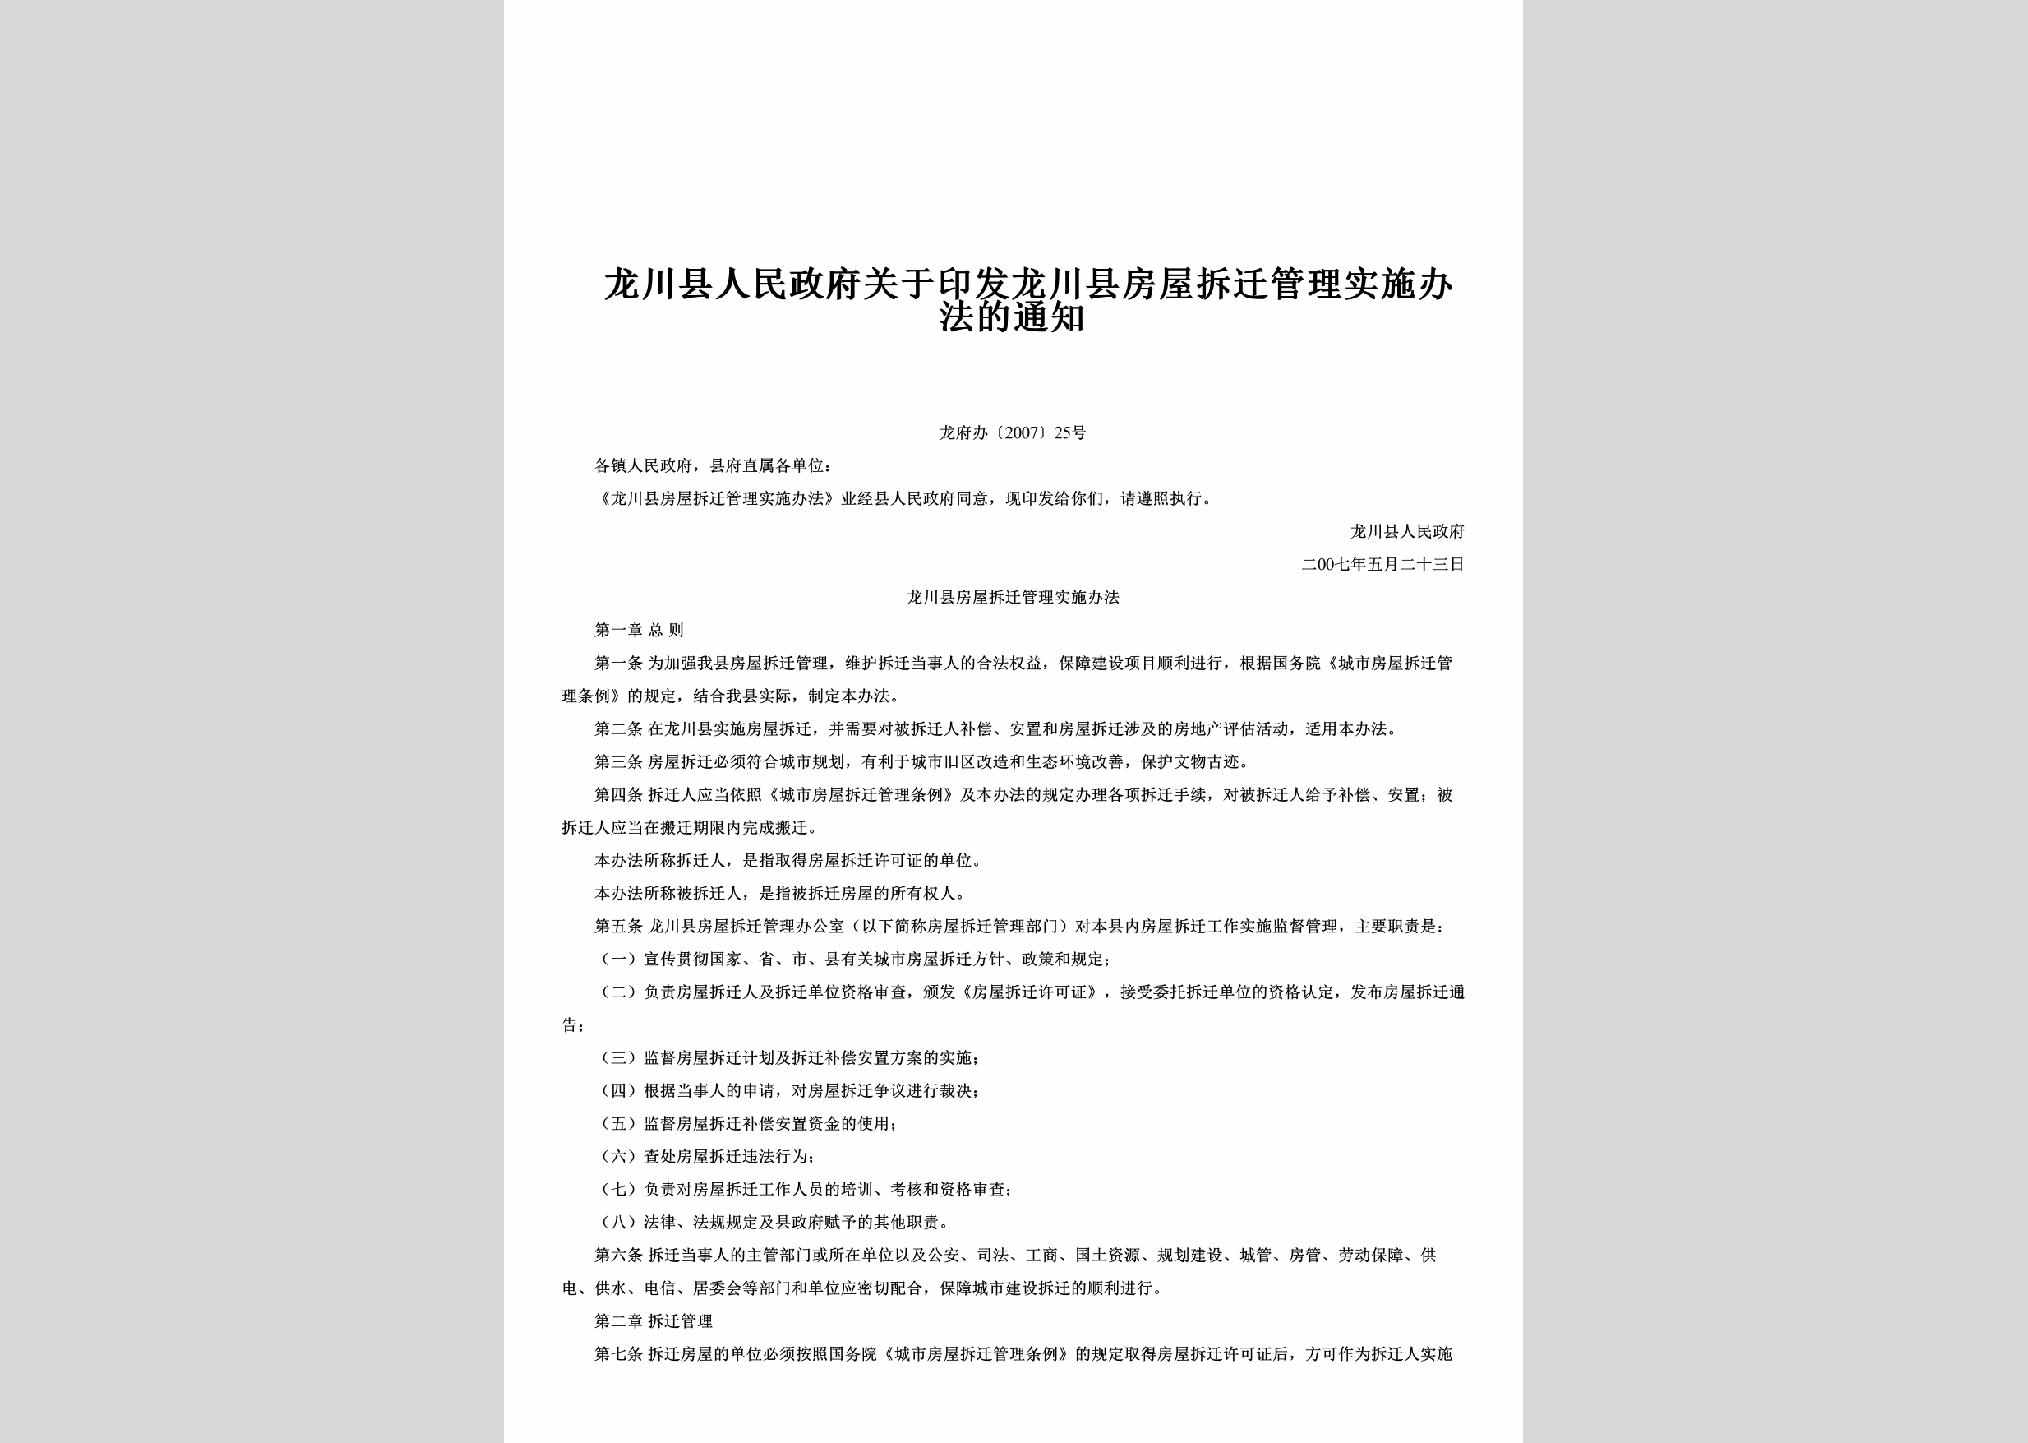 龙府办[2007]25号：关于印发龙川县房屋拆迁管理实施办法的通知